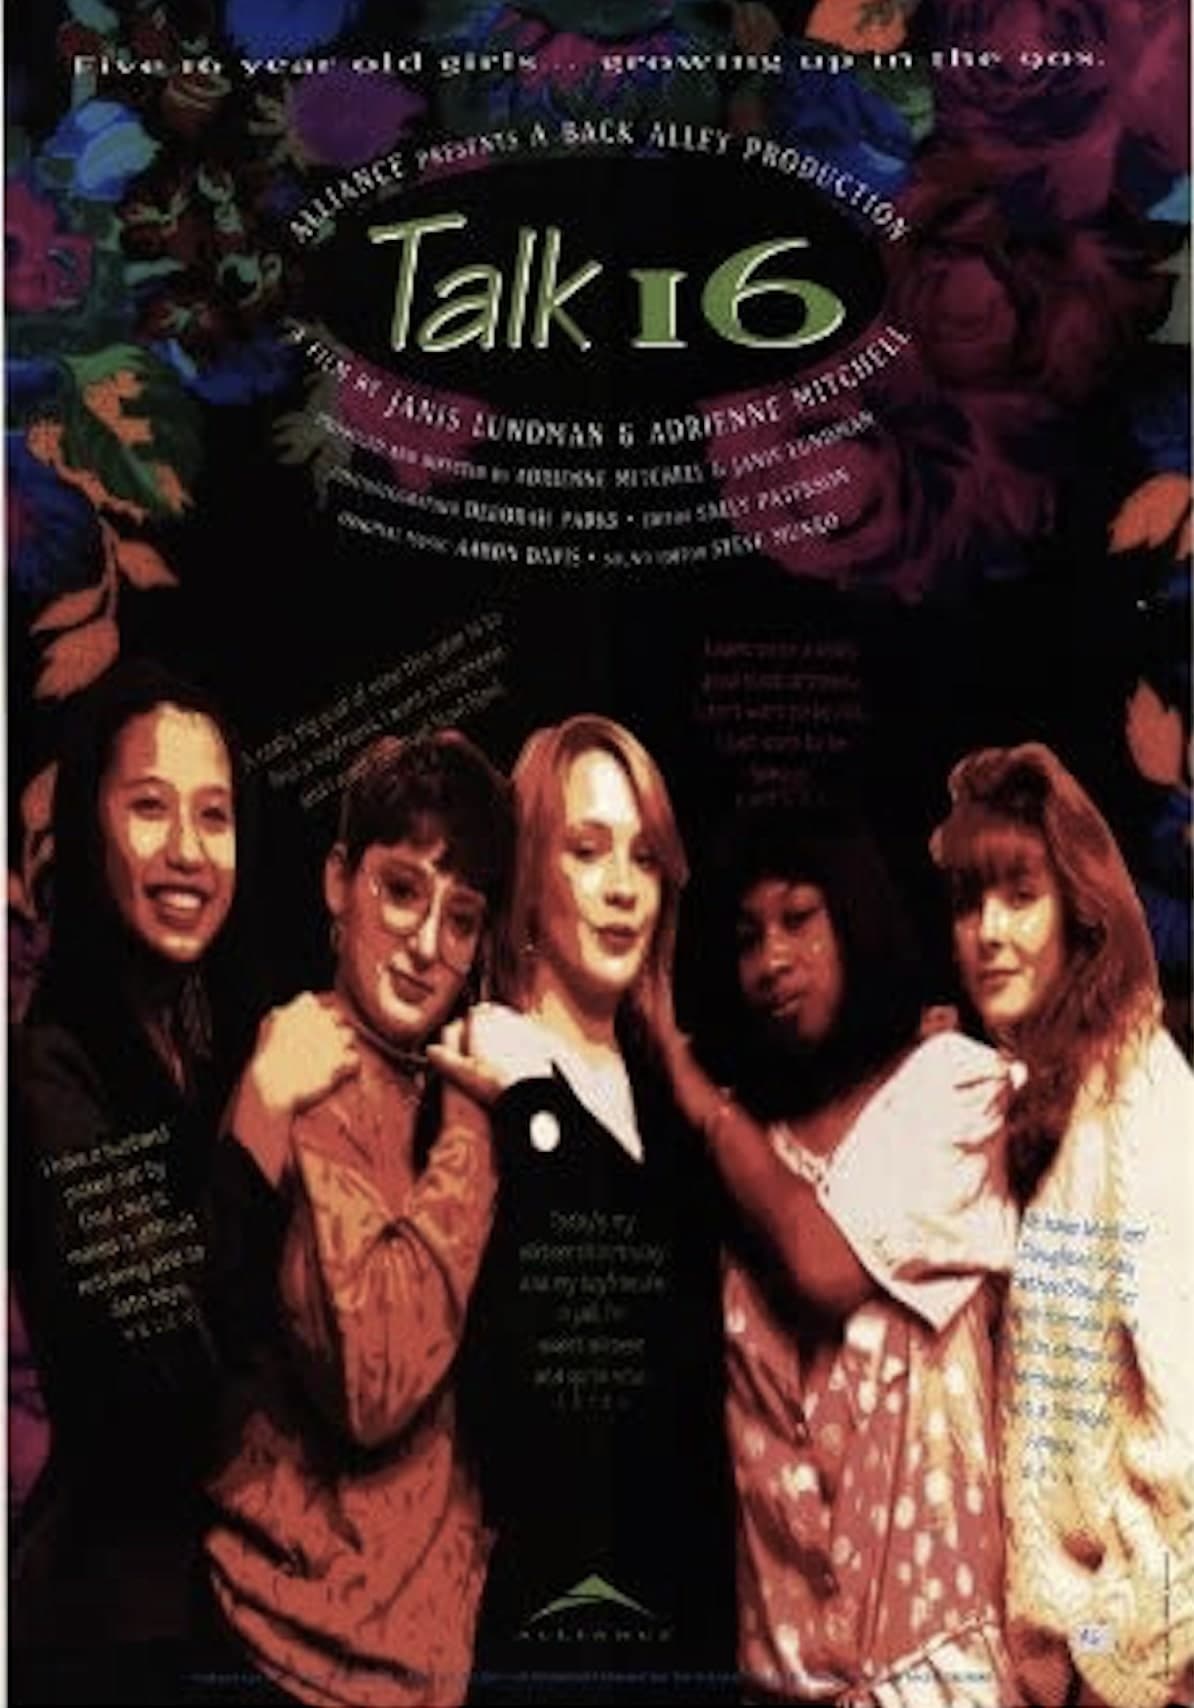 Talk 16